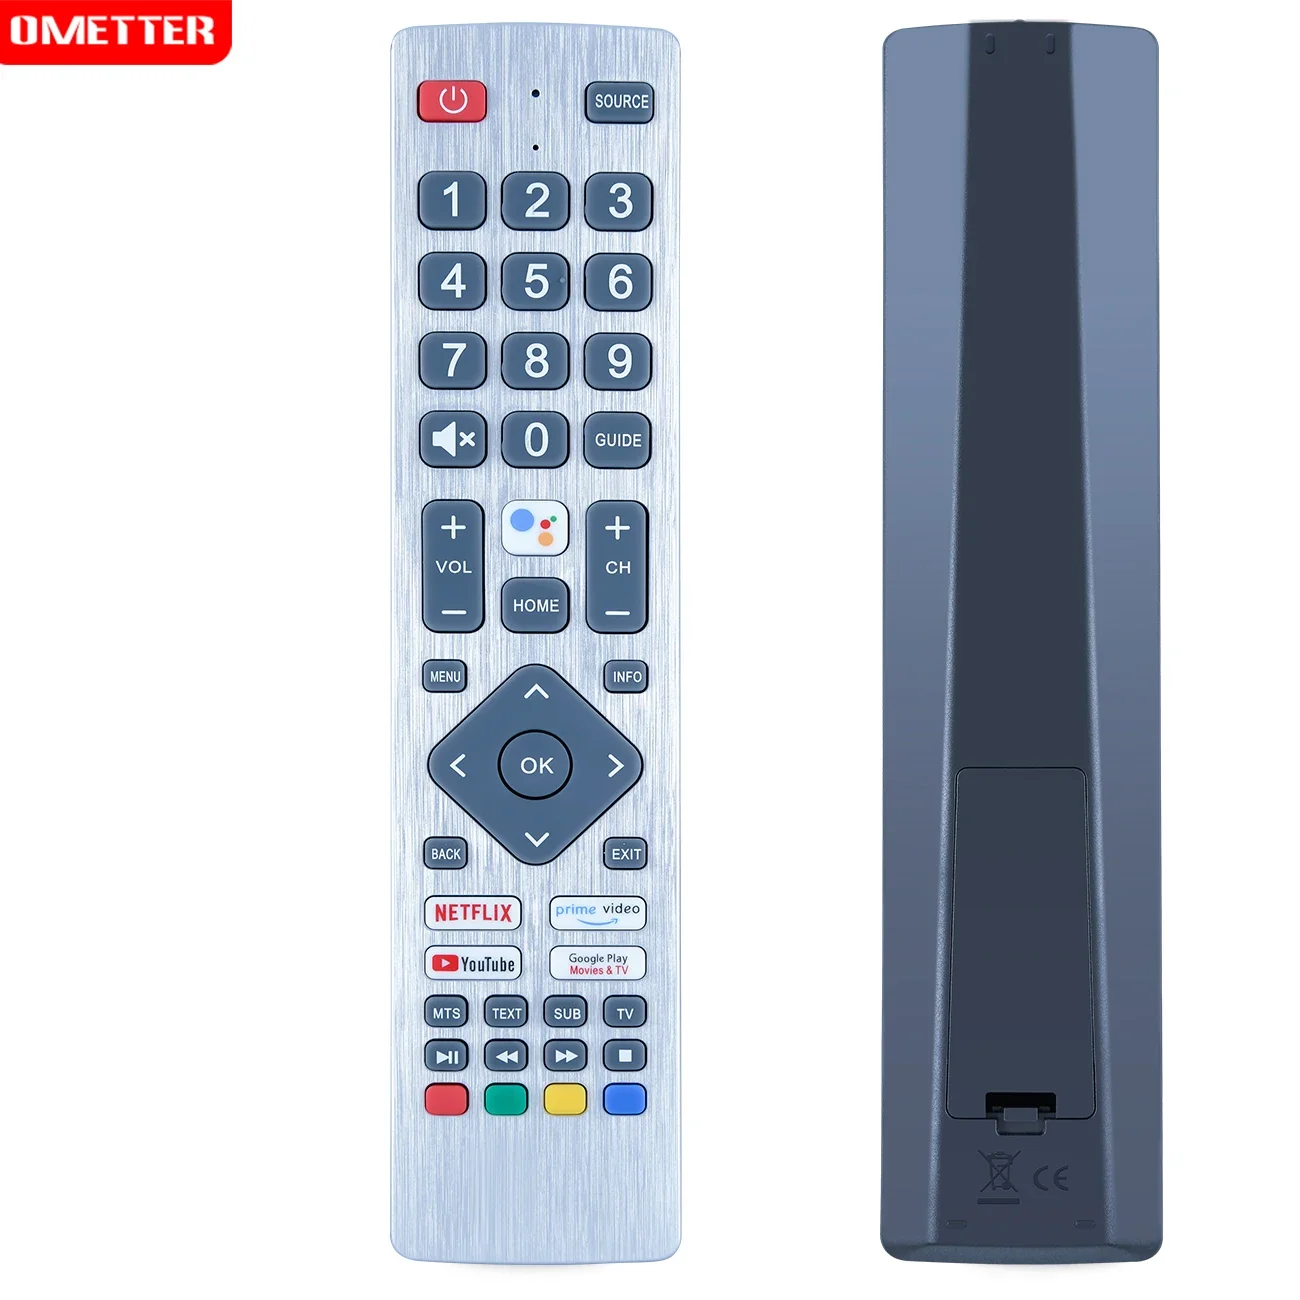 

New Remote Control SHWRMC0133 for Sharp 40BL2EA 40BL3EA 40BL4EA 40BL5EA 50BL2EA 50BL3EA 50BL4EA 50BL5EA 55BL2E TV Without Voice